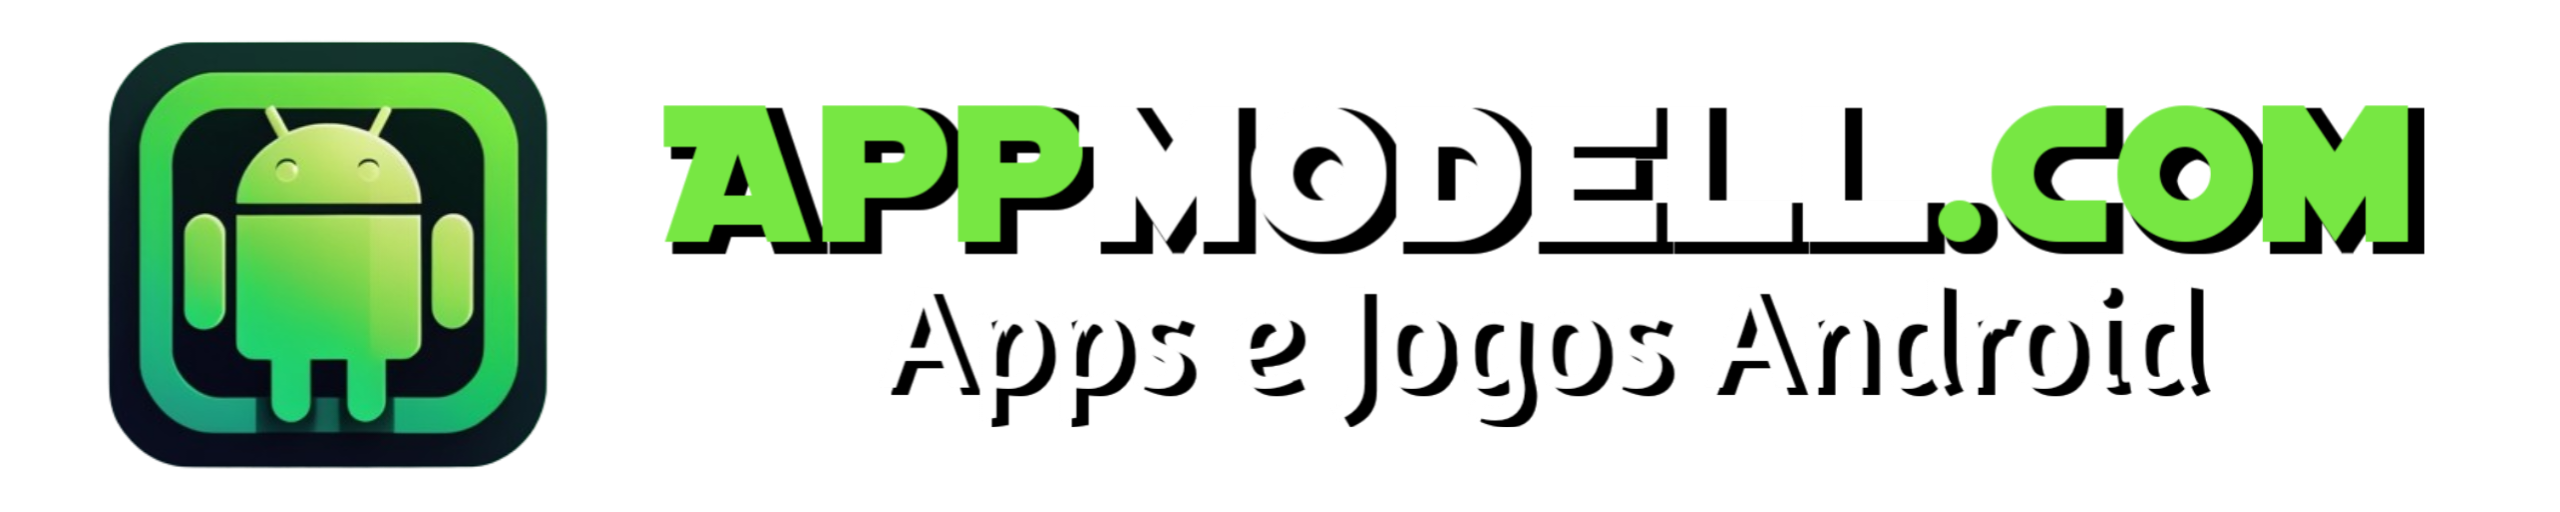 AppModell